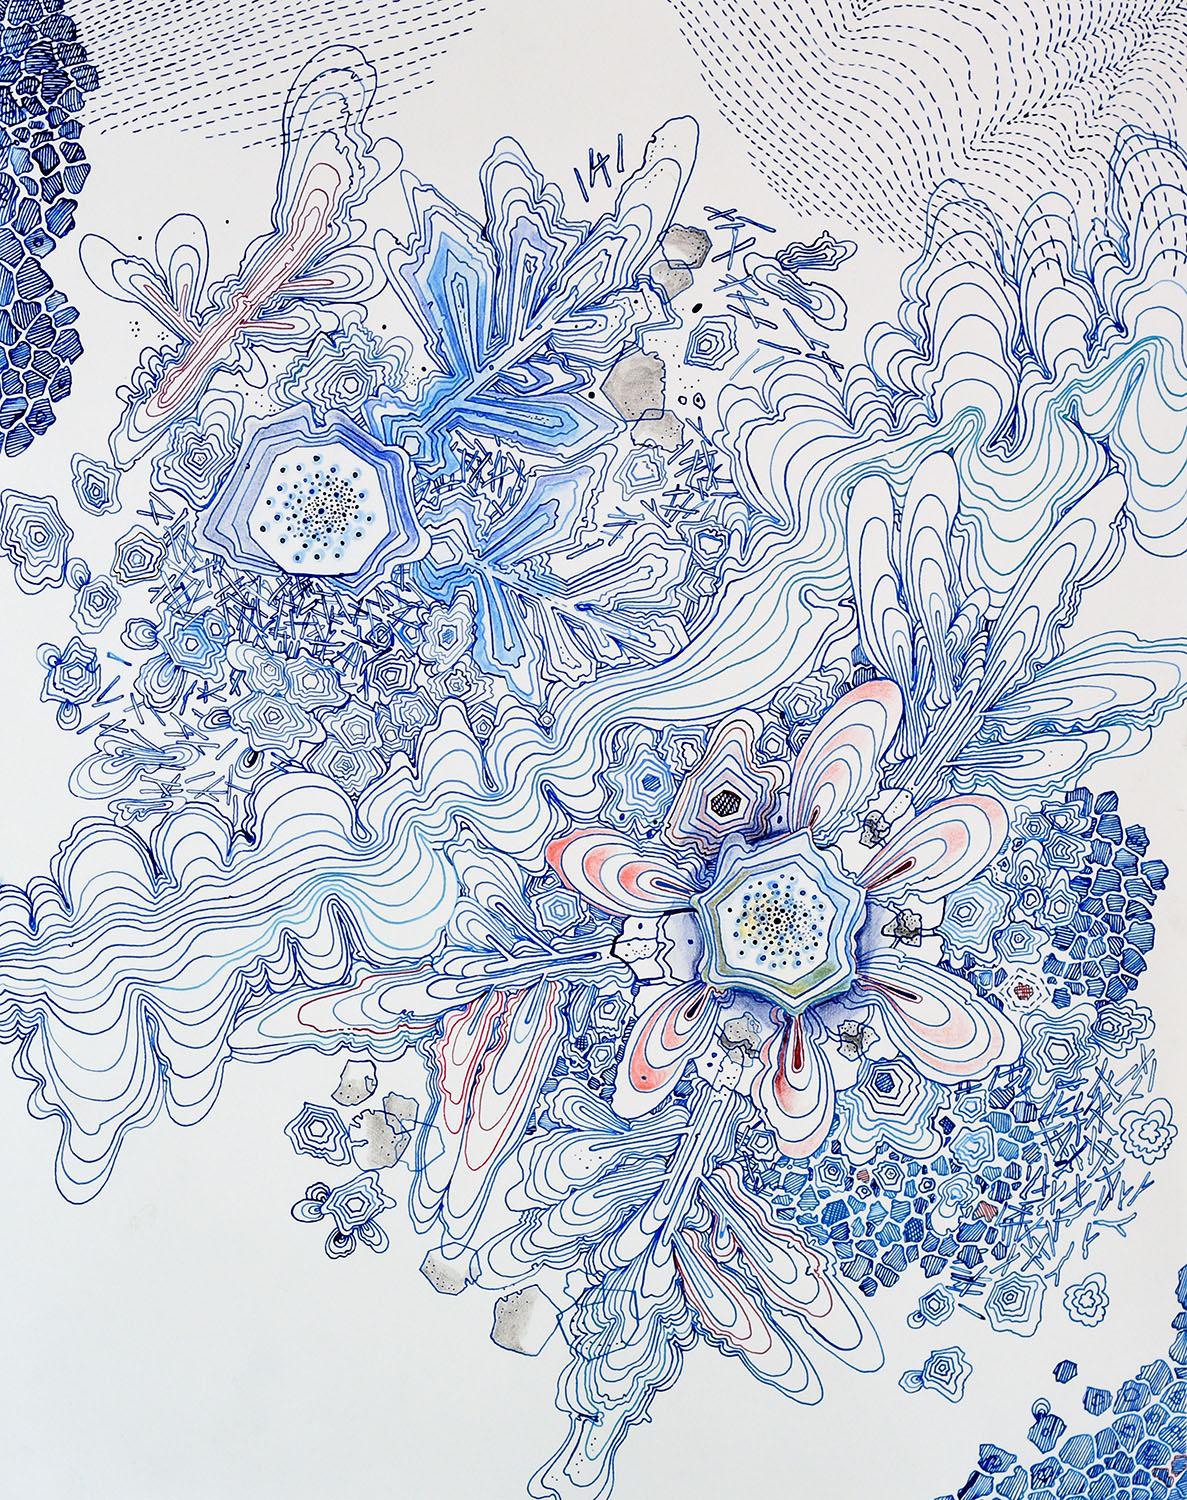 Sarah Morejohn Abstract Drawing - River, Indigo Blue, Navy, Cobalt, Salmon Pink, Red Snowflake Pattern Drawing